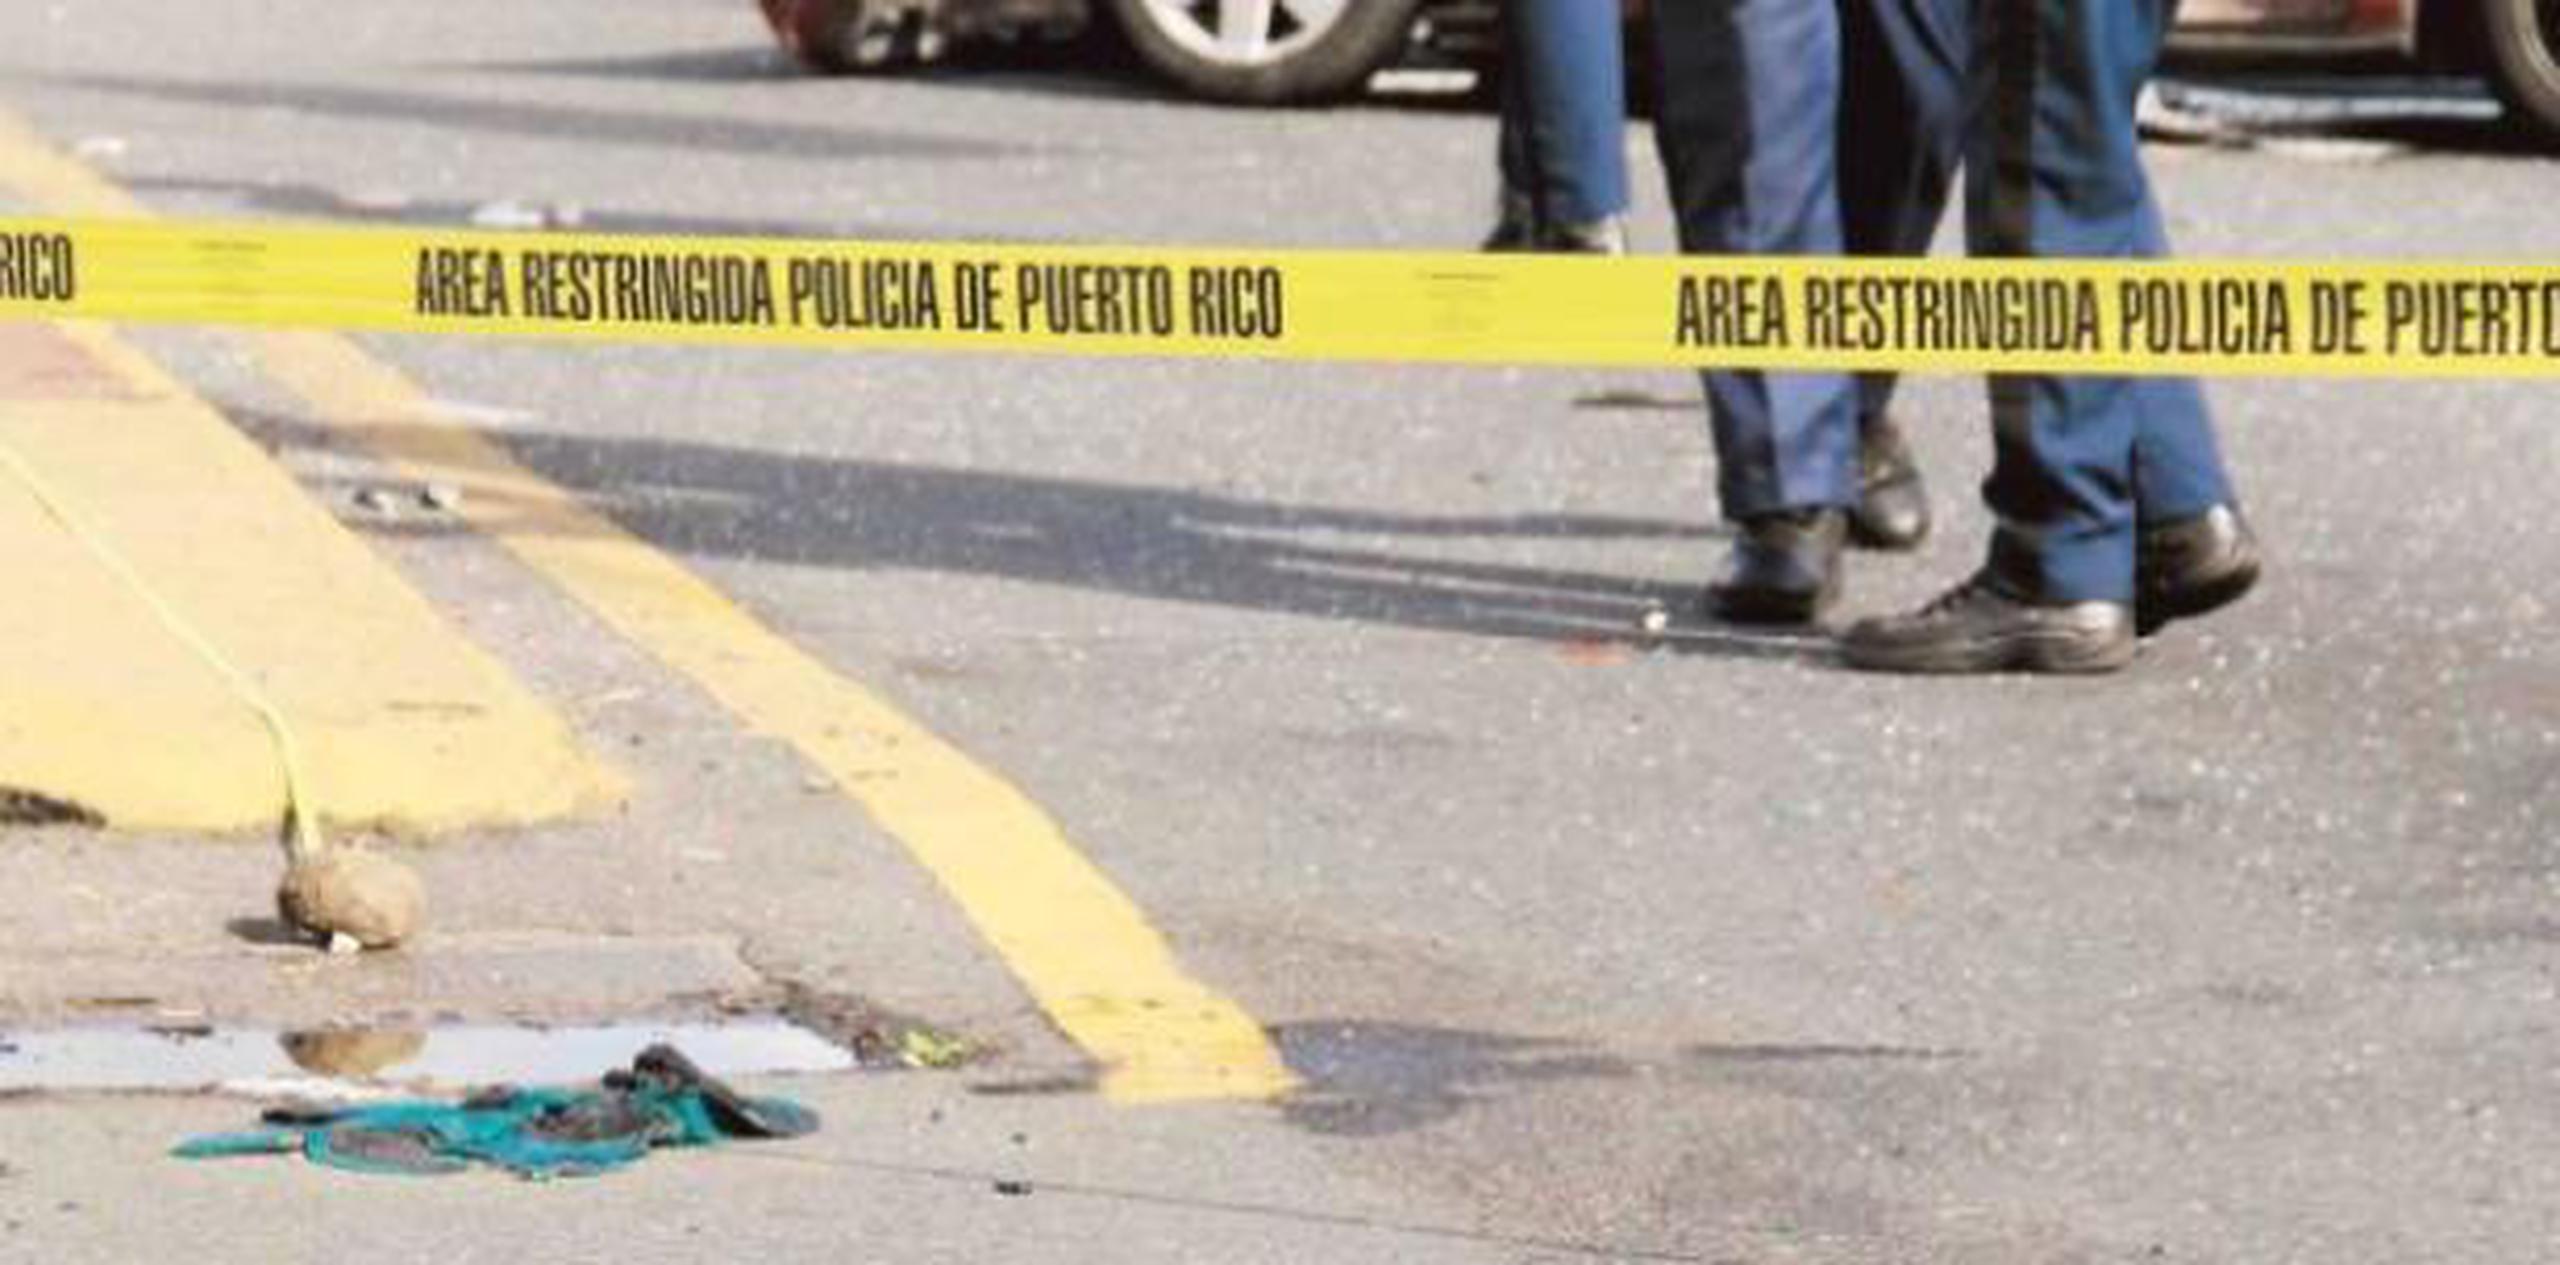 El conductor, que era vecino de Santa Isabel, falleció en la escena. (Archivo)